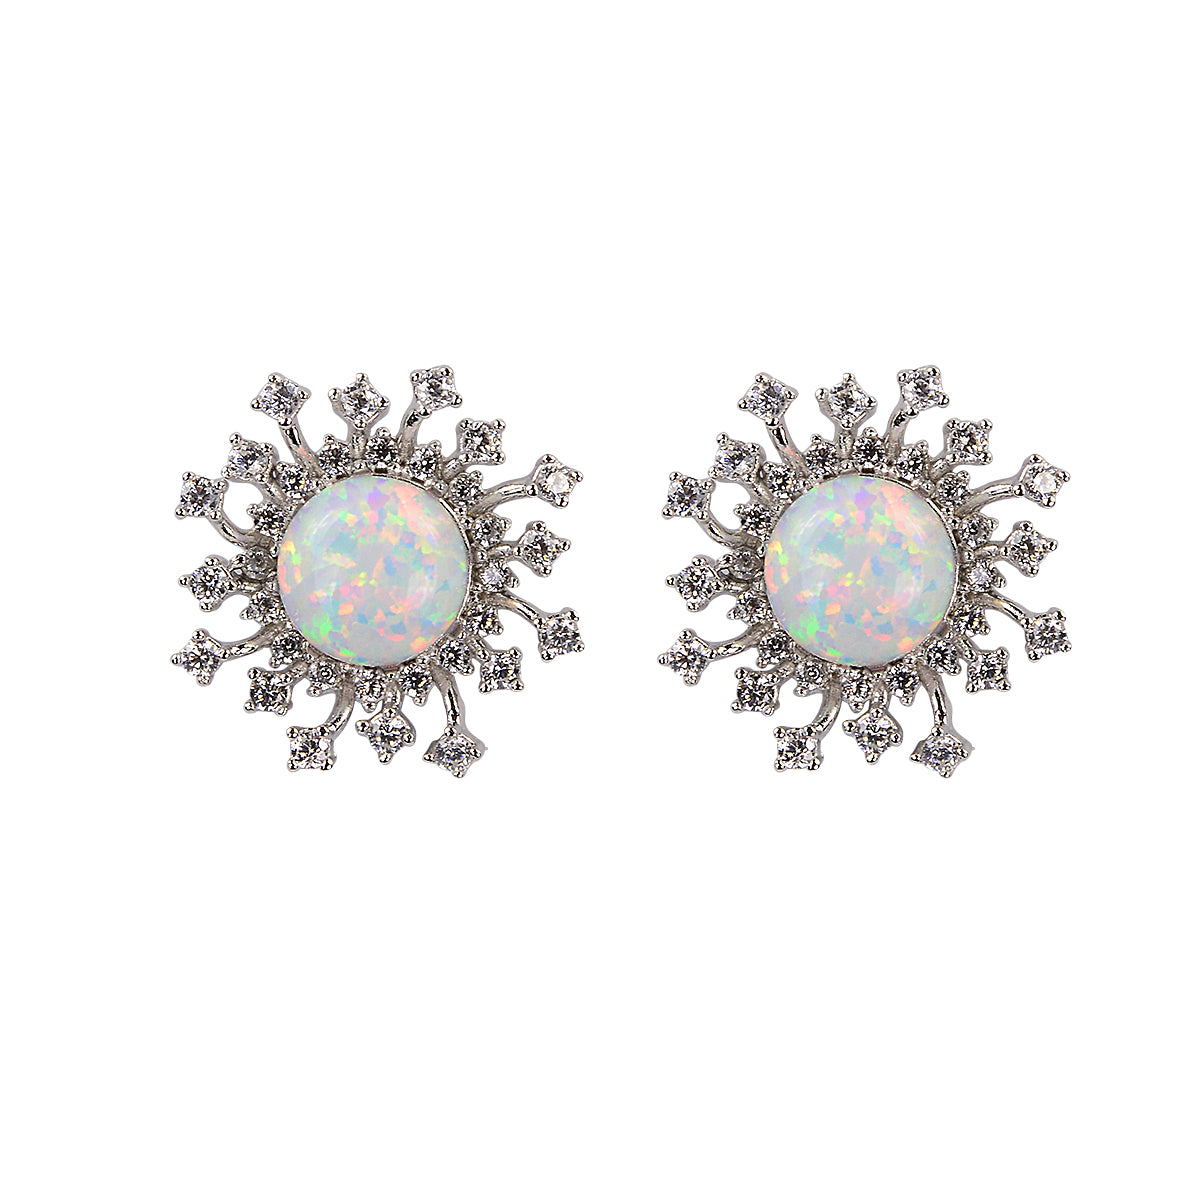 White opal earrings 